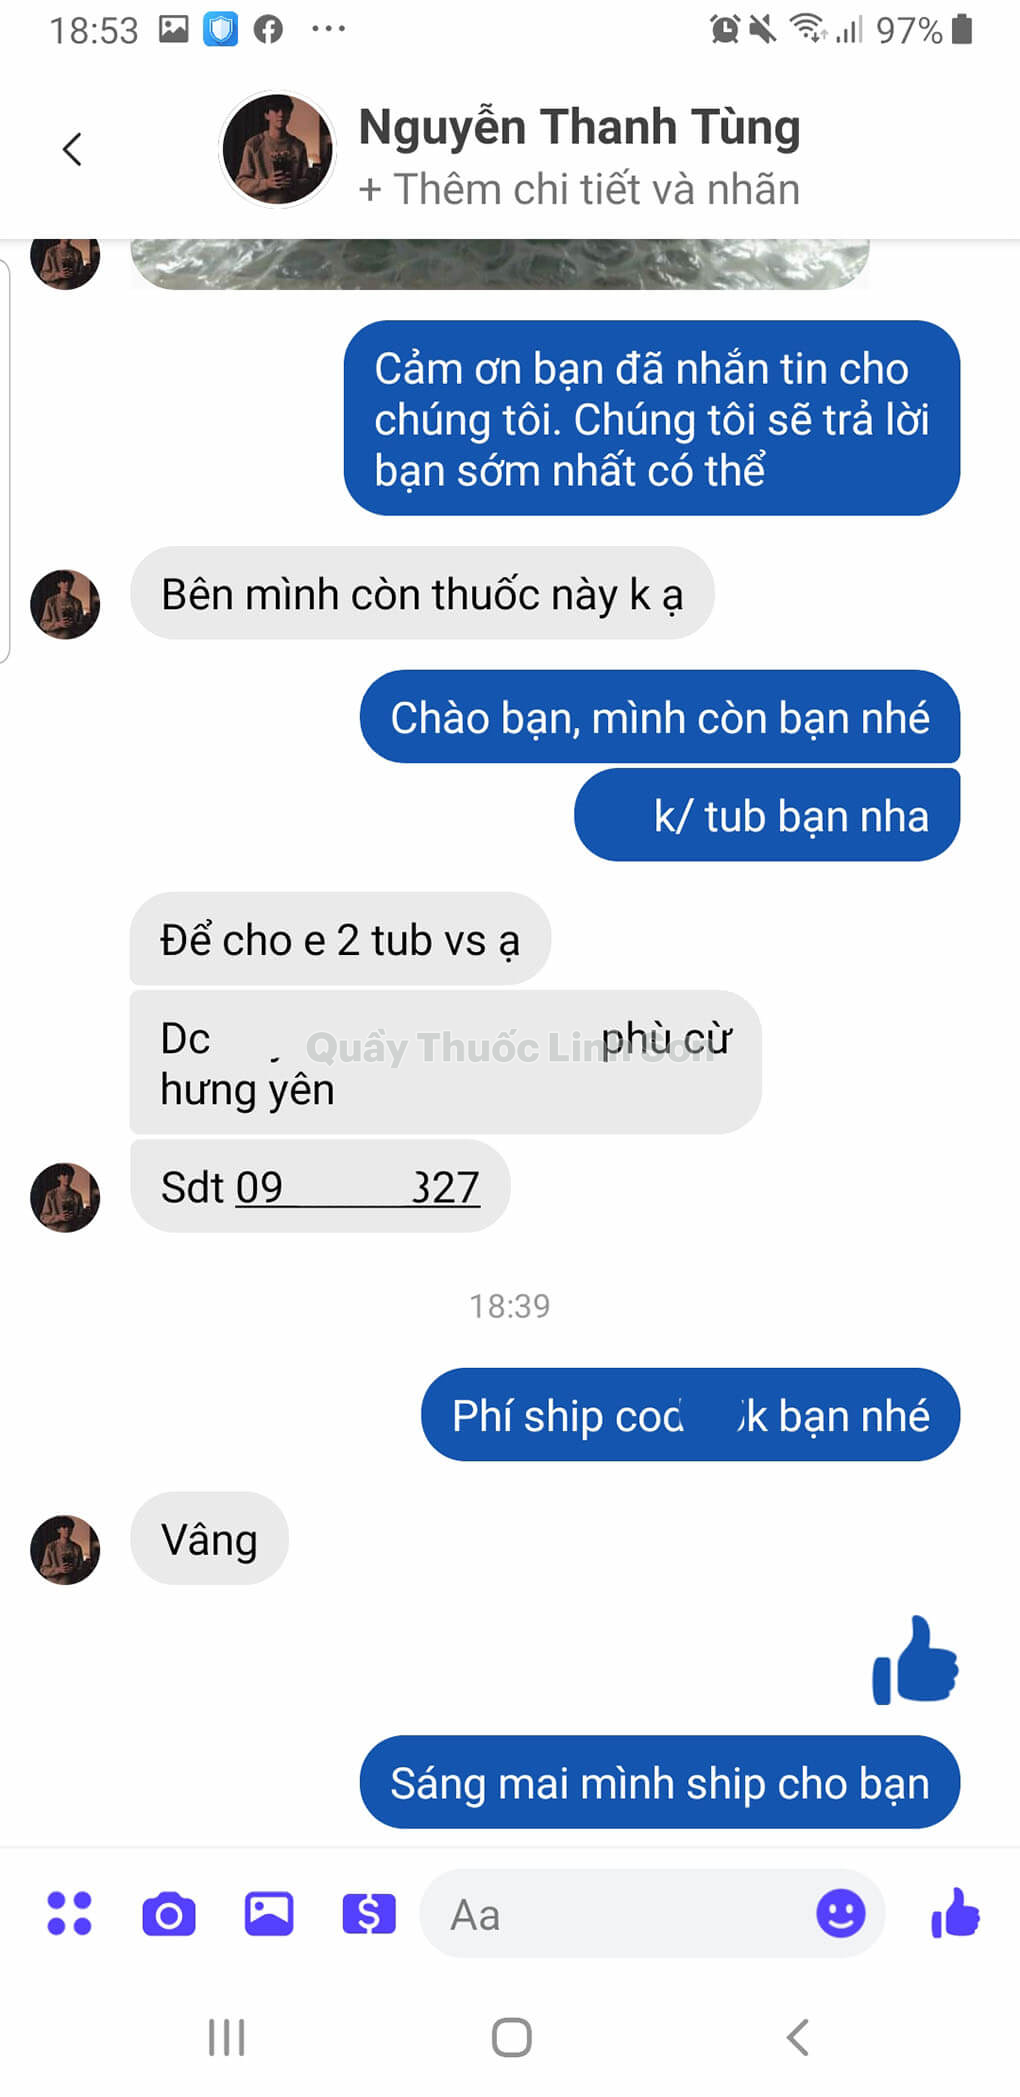 Bạn Tùng ở Hưng Yên mua 2 Tuýp Hepgentex